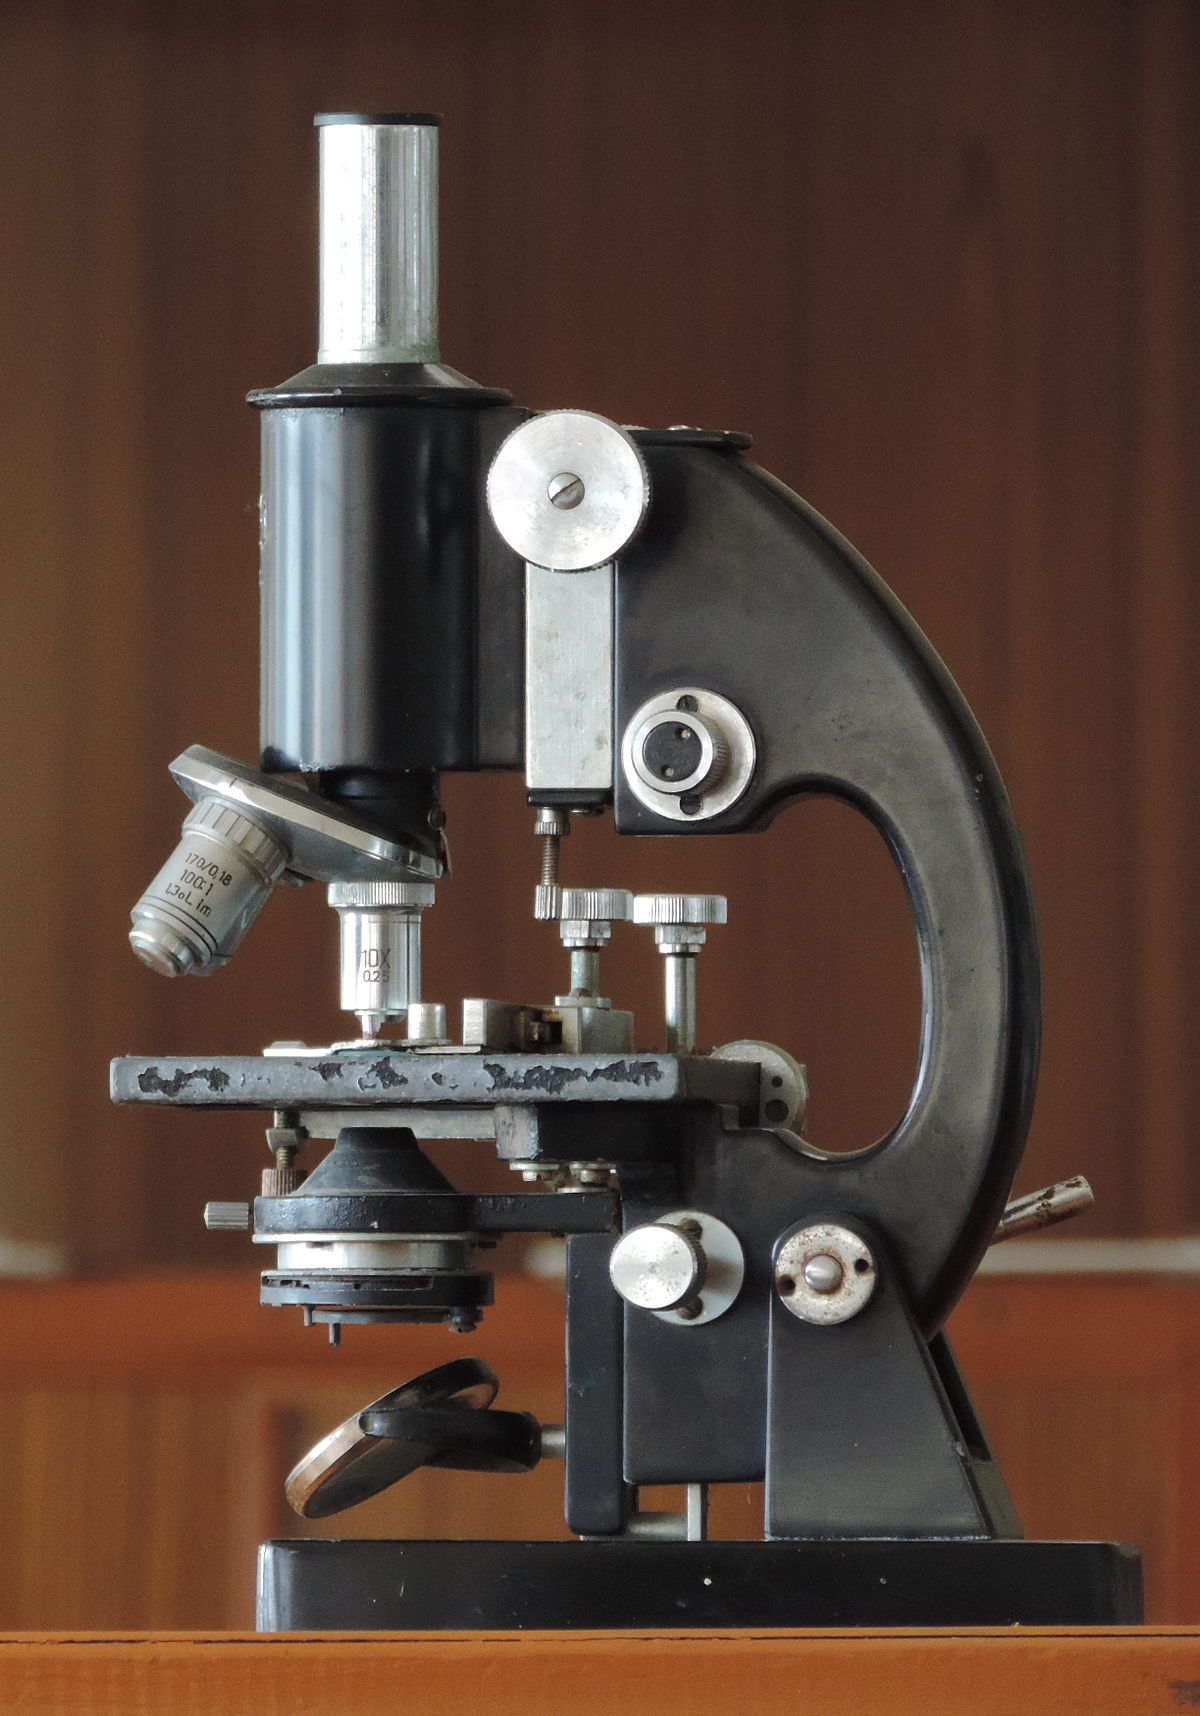 Microscope - Wikipedia